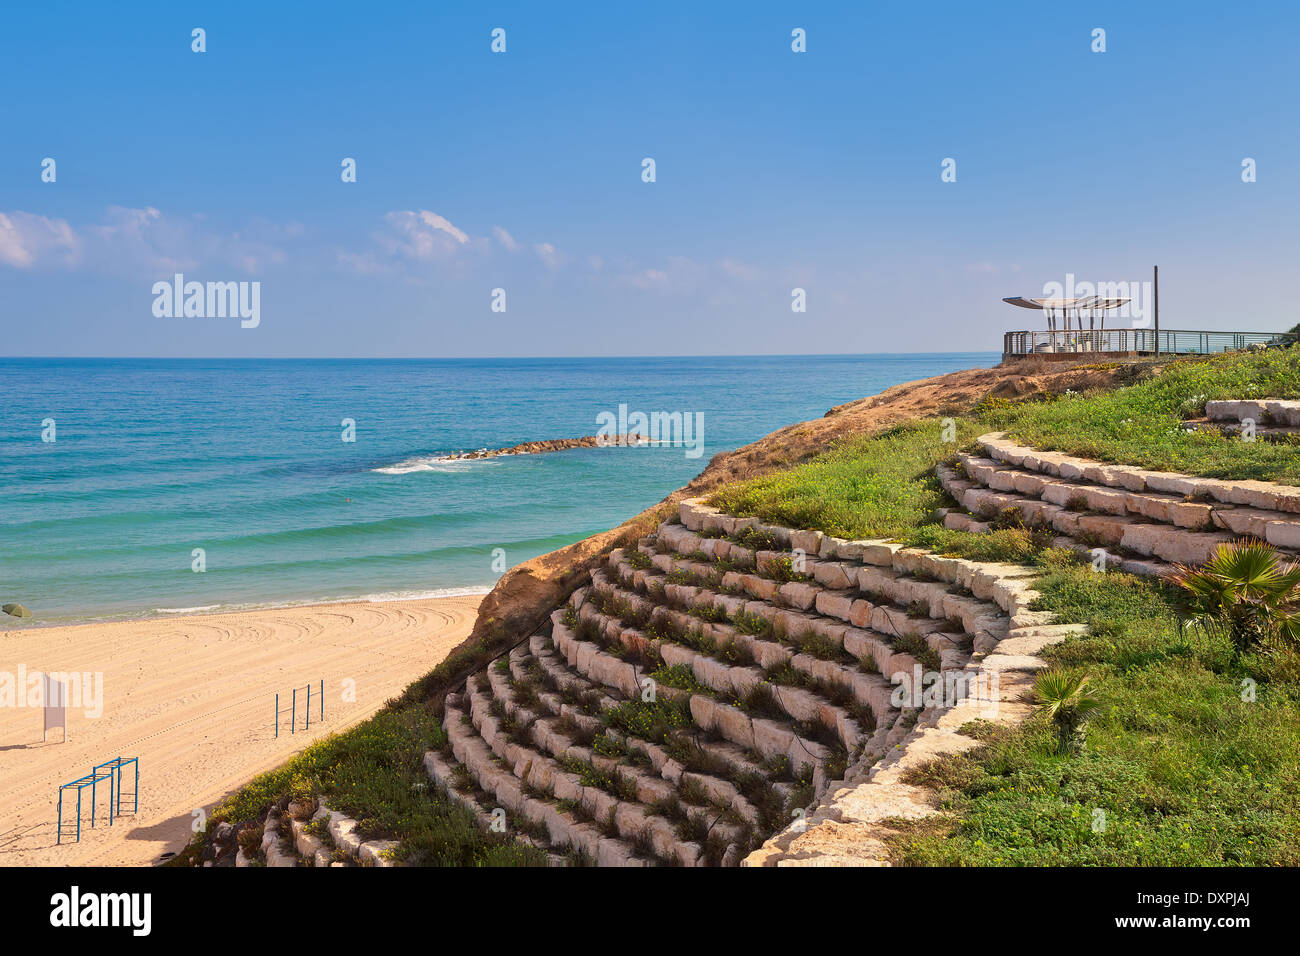 Terrasse en pierre artificielle avec de l'herbe bien verte et plage de sable fin sur la mer Méditerranée à Ashkelon, en Israël. Banque D'Images